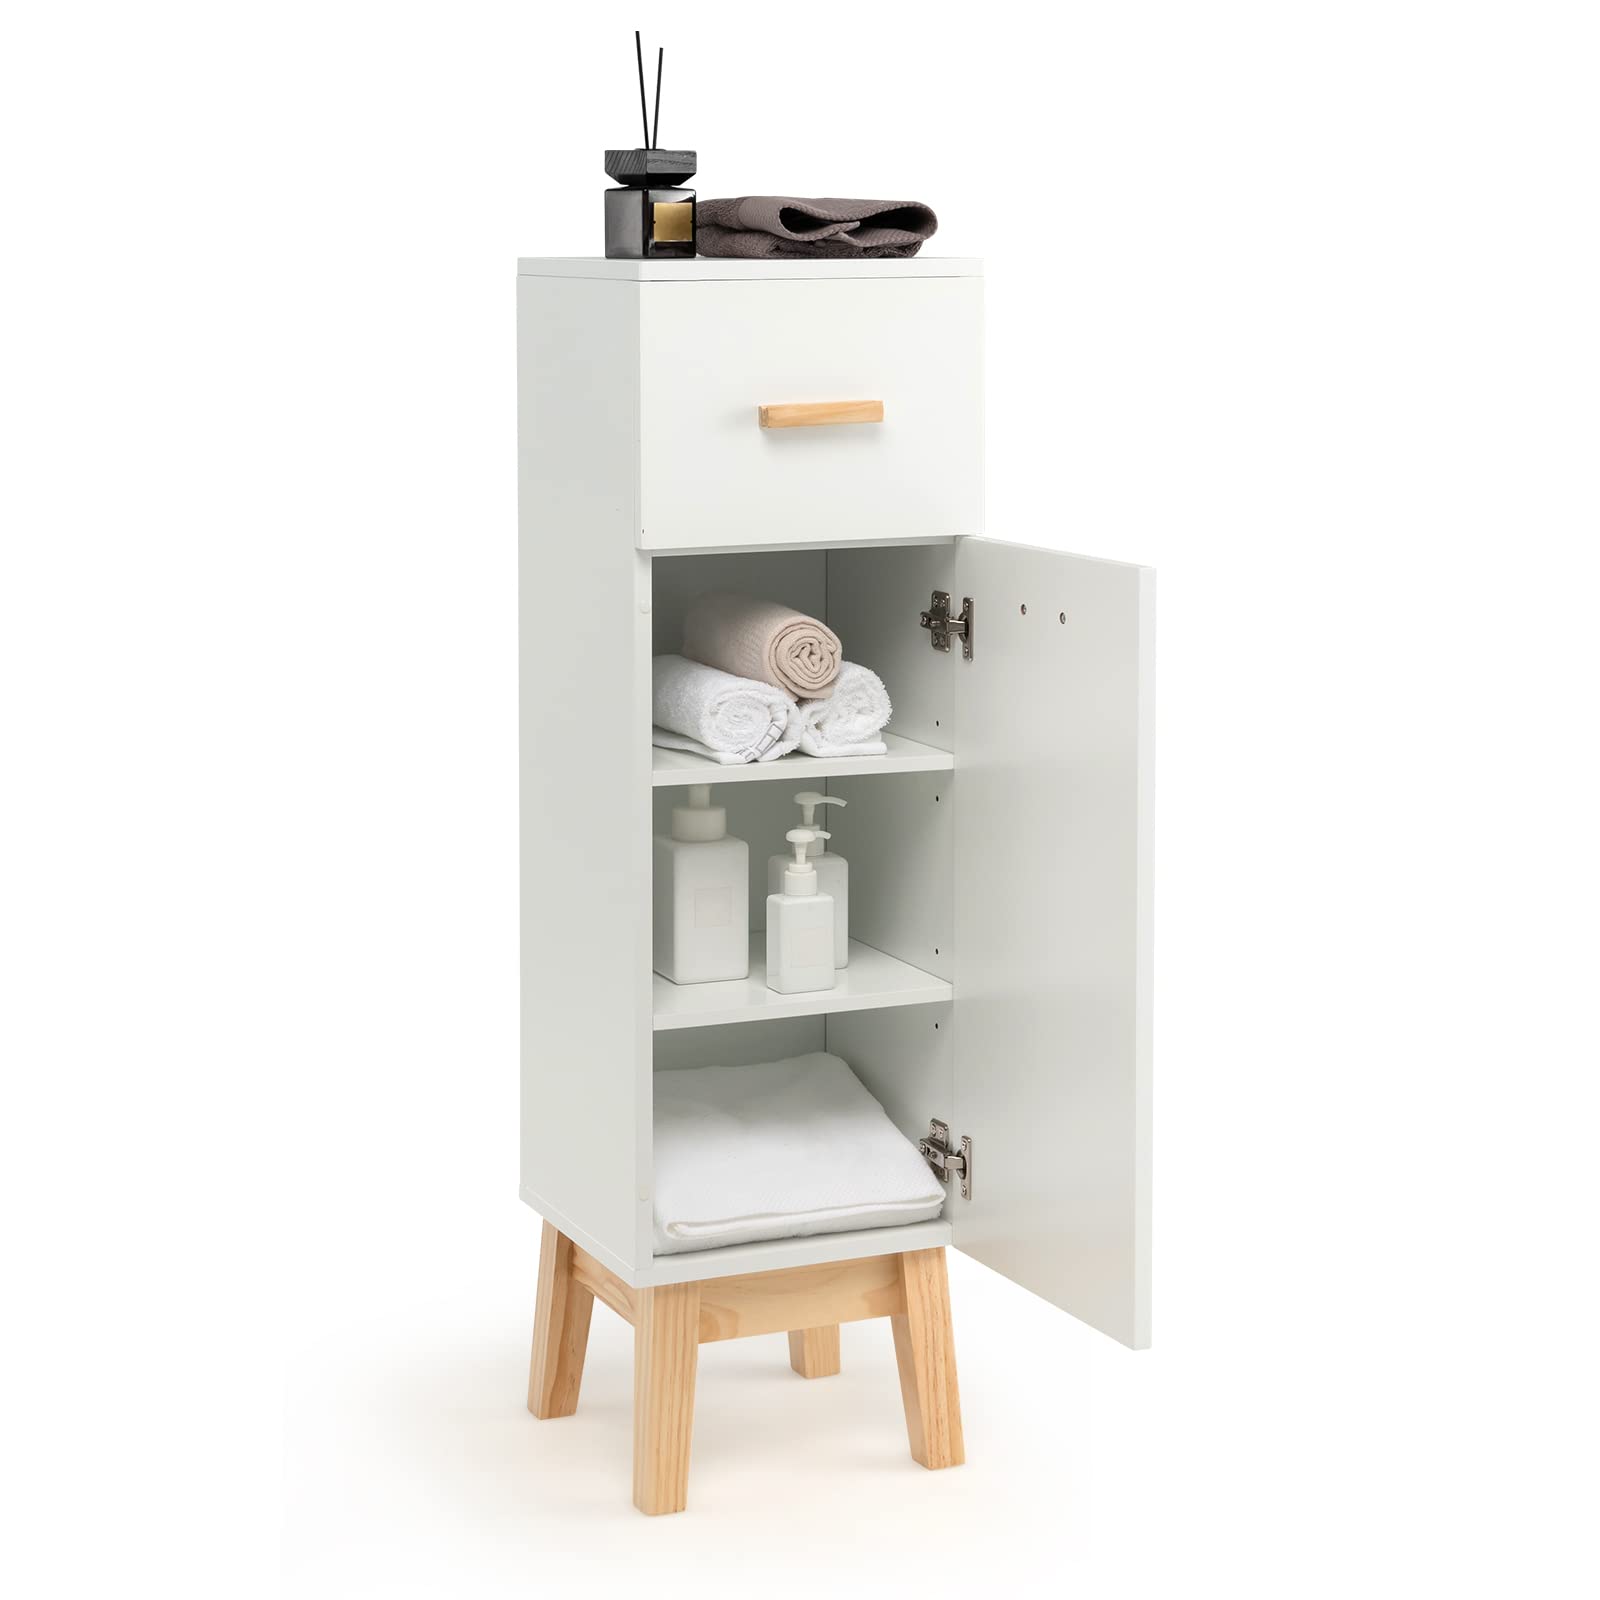 Giantex Bathroom Floor Storage Cabinet - Freestanding Floor Cabinet with Drawer, Adjustable Shelves